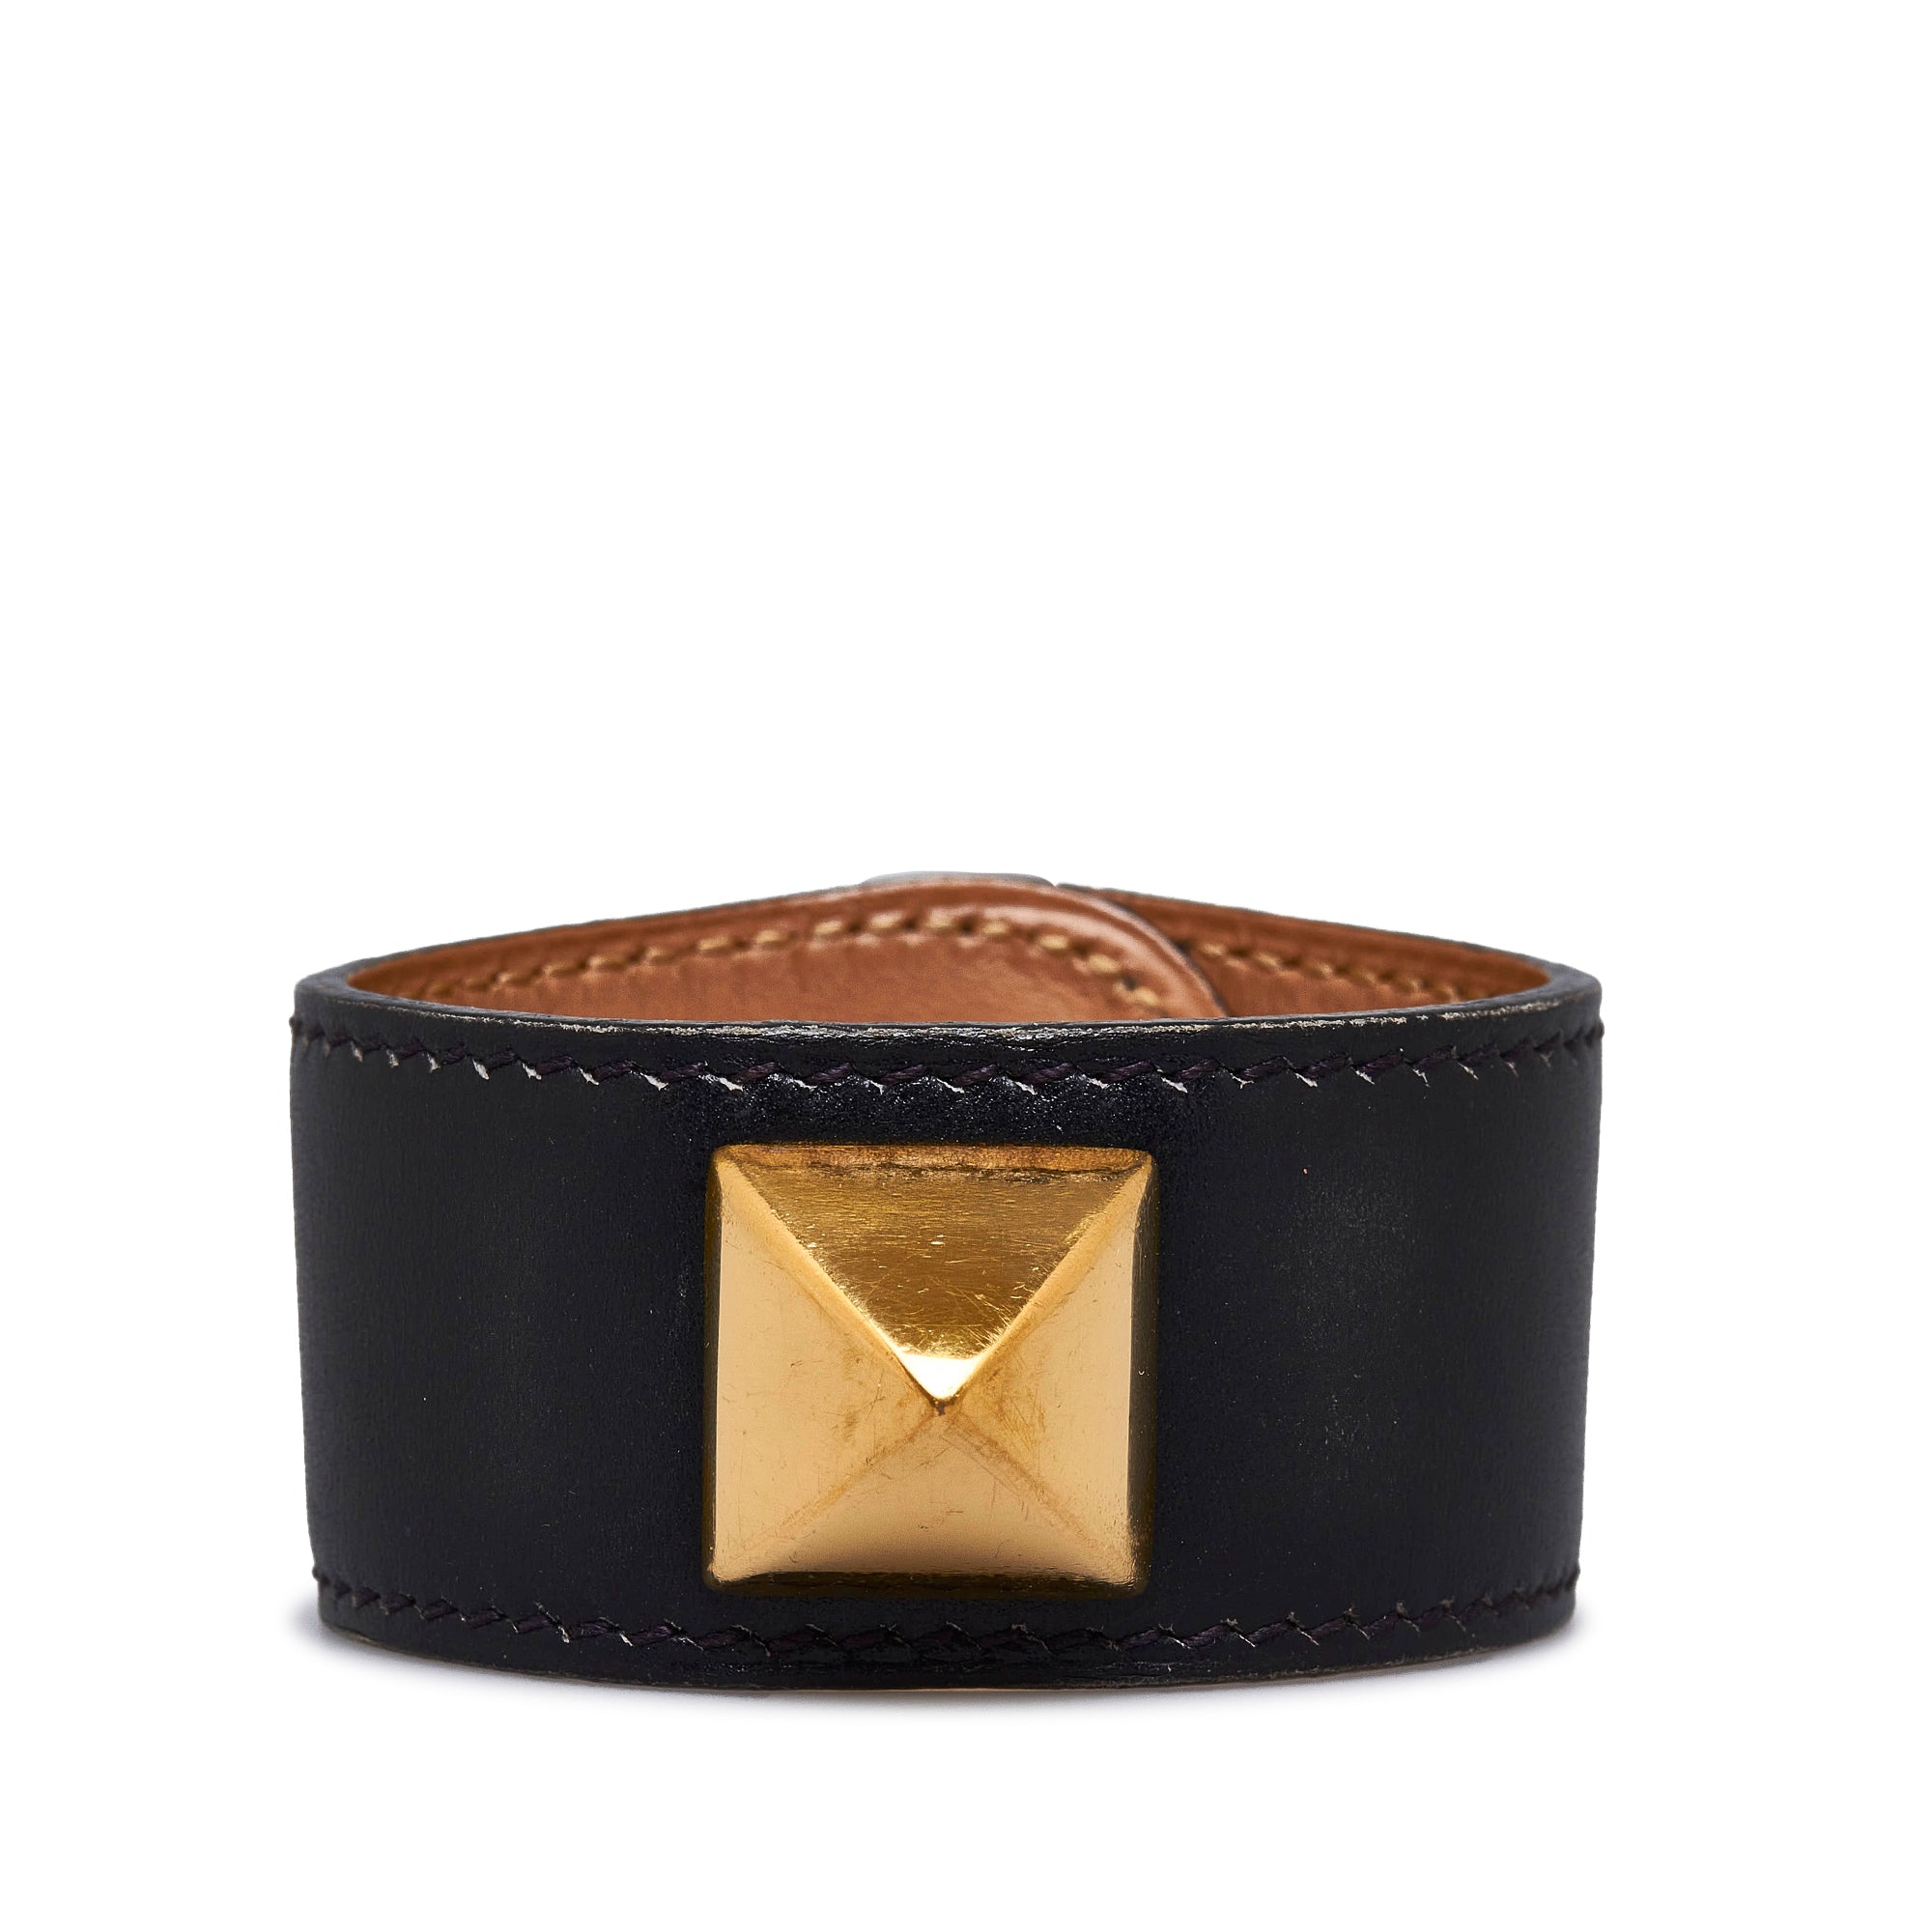 louis vuitton leather bracelet black